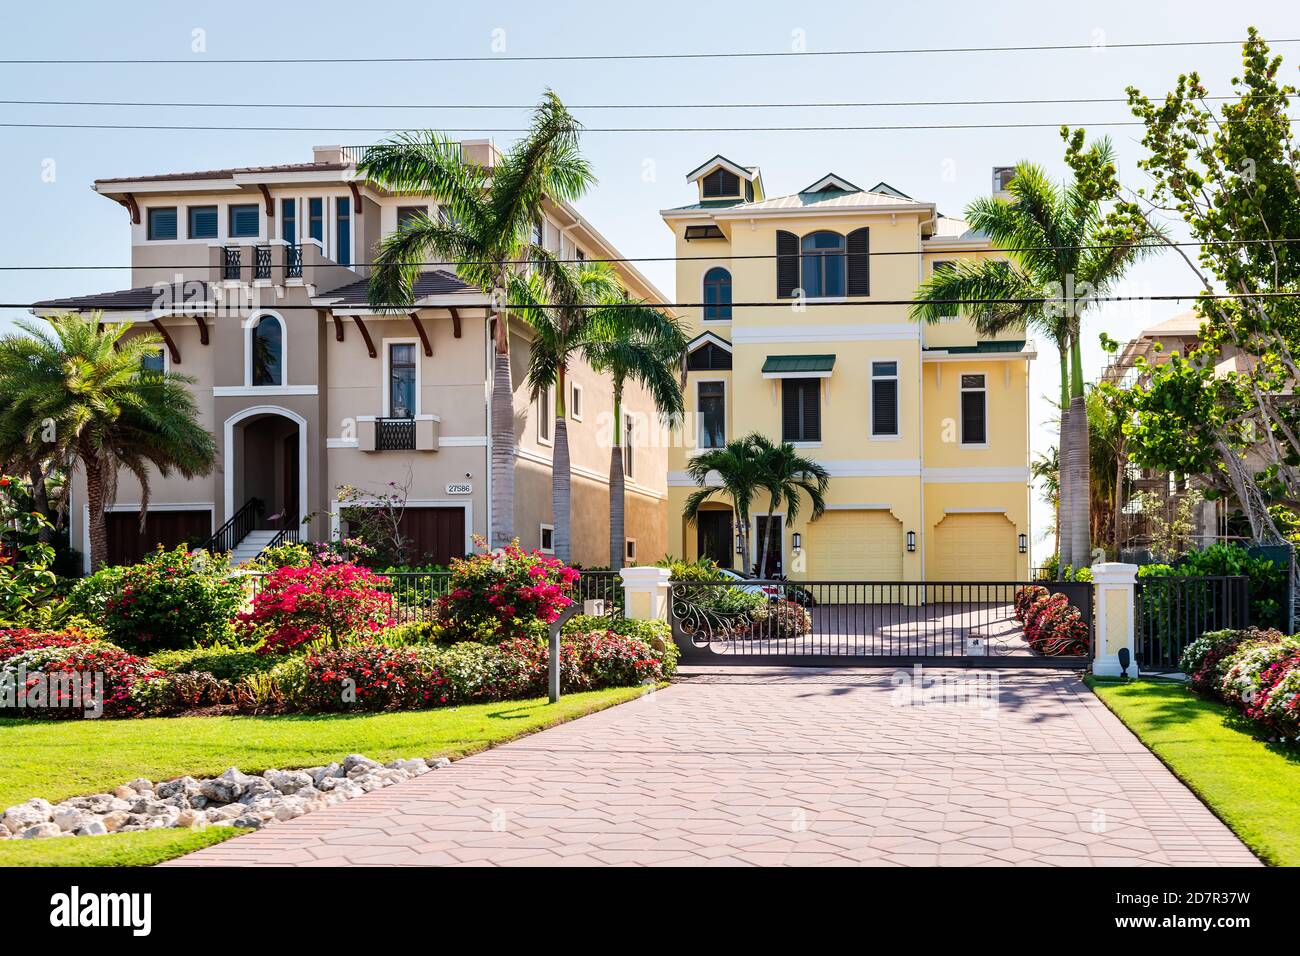 Fort Myers Beach, Stati Uniti d'America - 29 aprile 2018: Il golfo della Florida della costa del messico con le case costose di lusso edifici lungomare architettura moderna gated archi Foto Stock